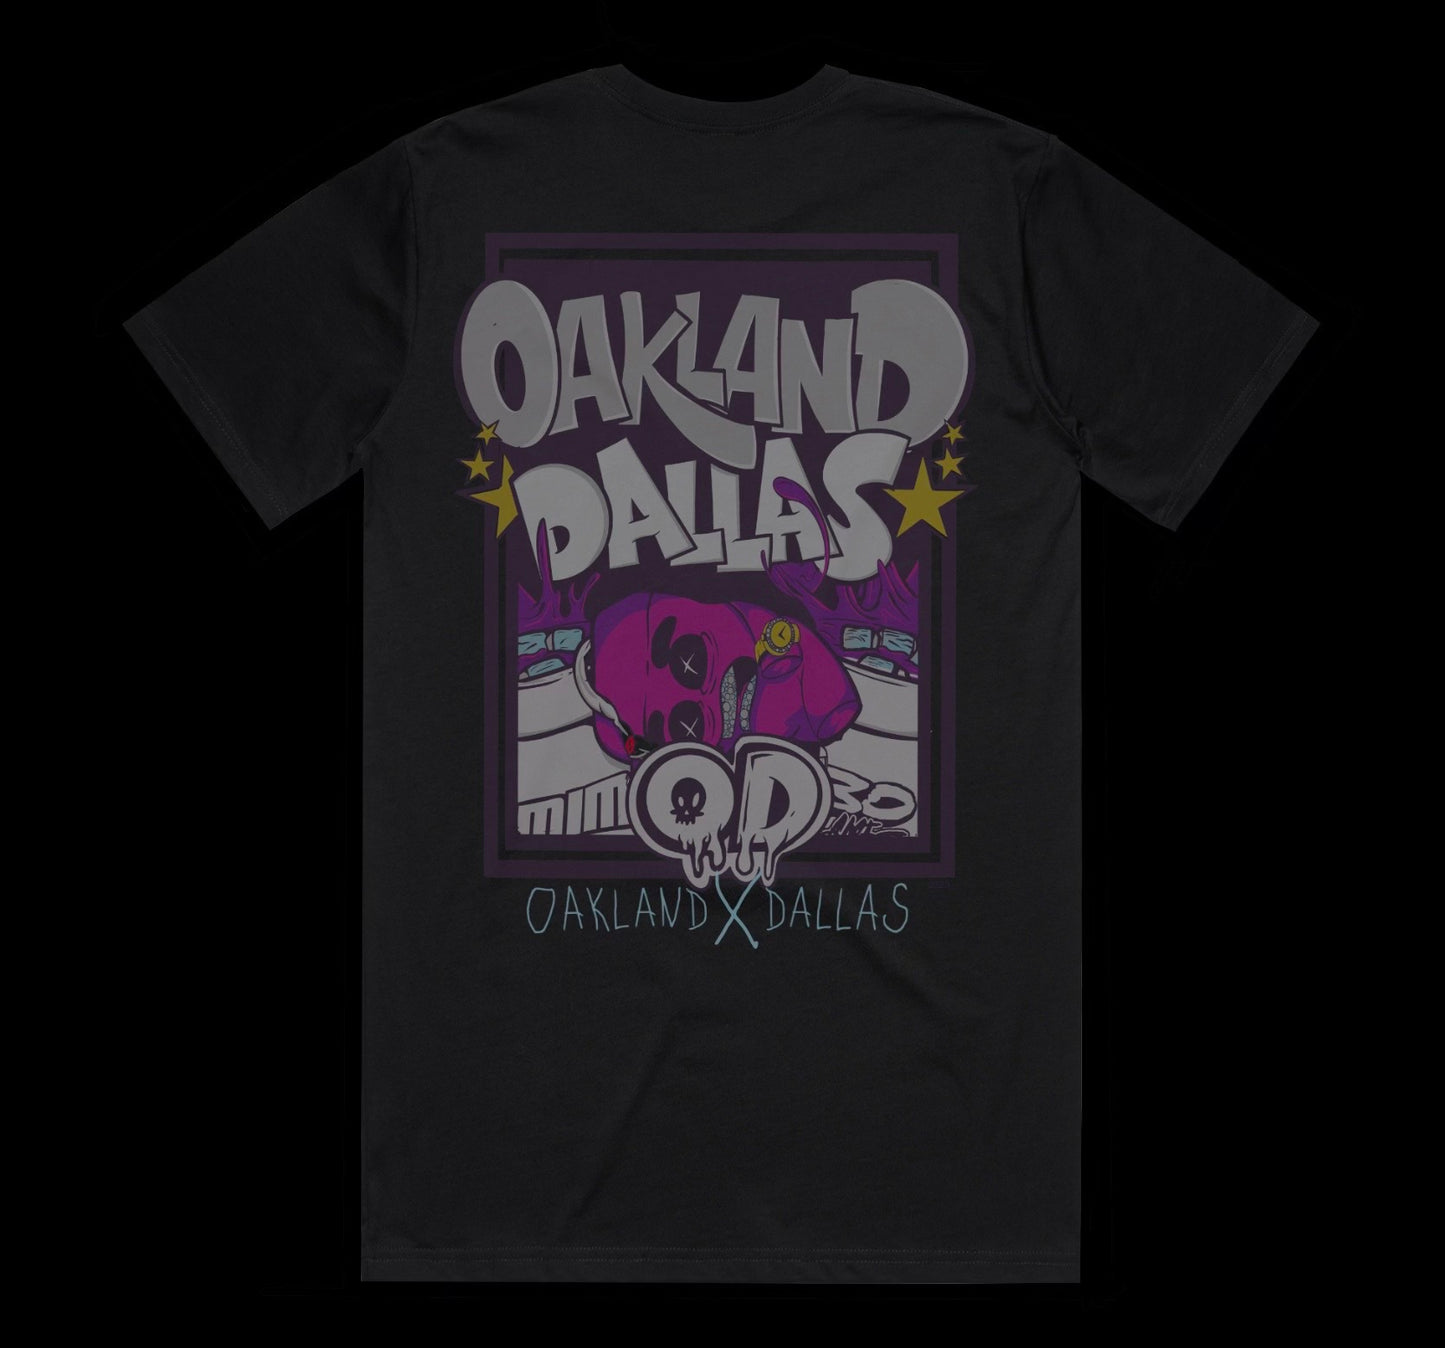 OD (Oakland x Dalllas)